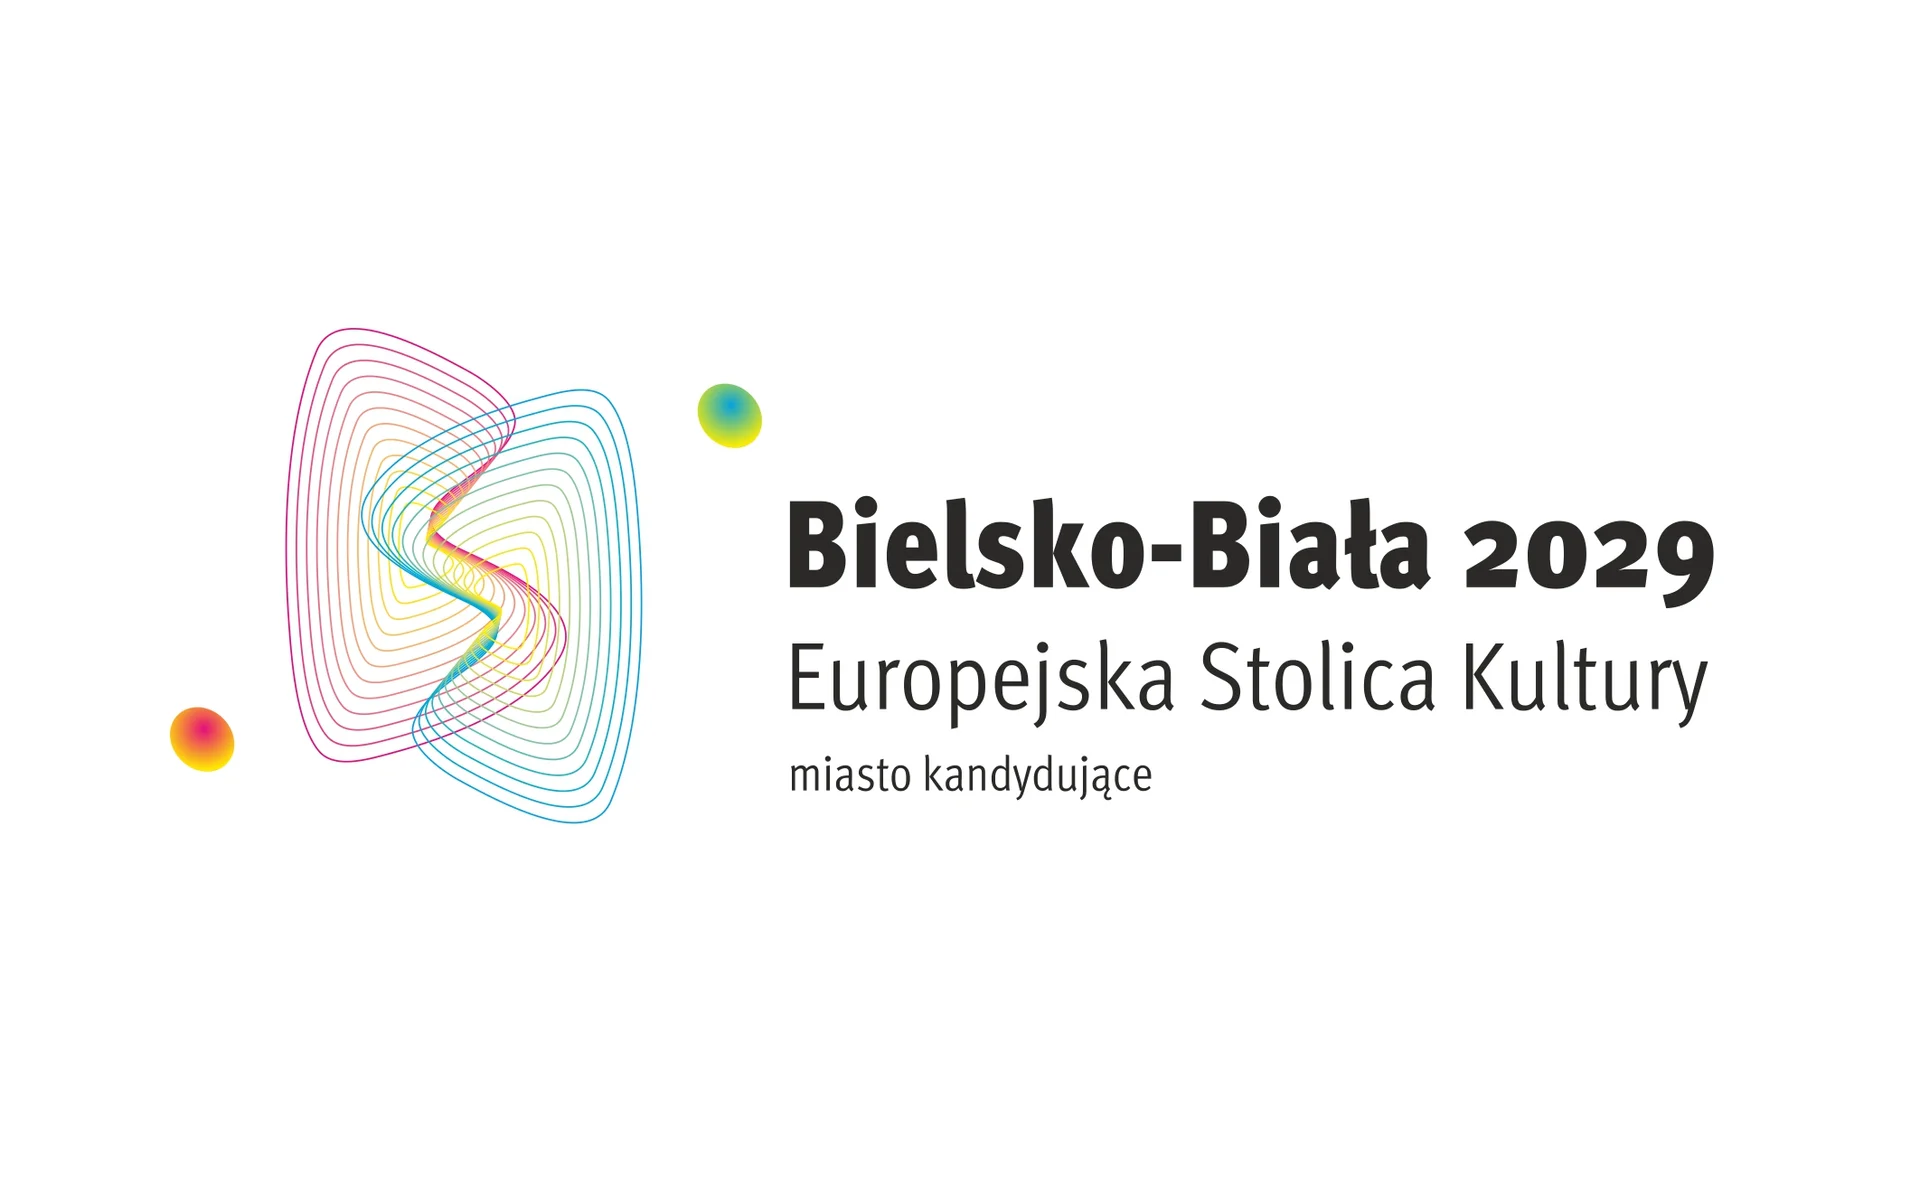 Logotyp - czarny napis na białym tle: Bielsko-Biała 2029 Europejska Stolica Kultury. Miasto kandydujące. Obok grafiki w formie splatających się kolorowych linii - dwa małe kółka - zielone i pomarańczowe.  